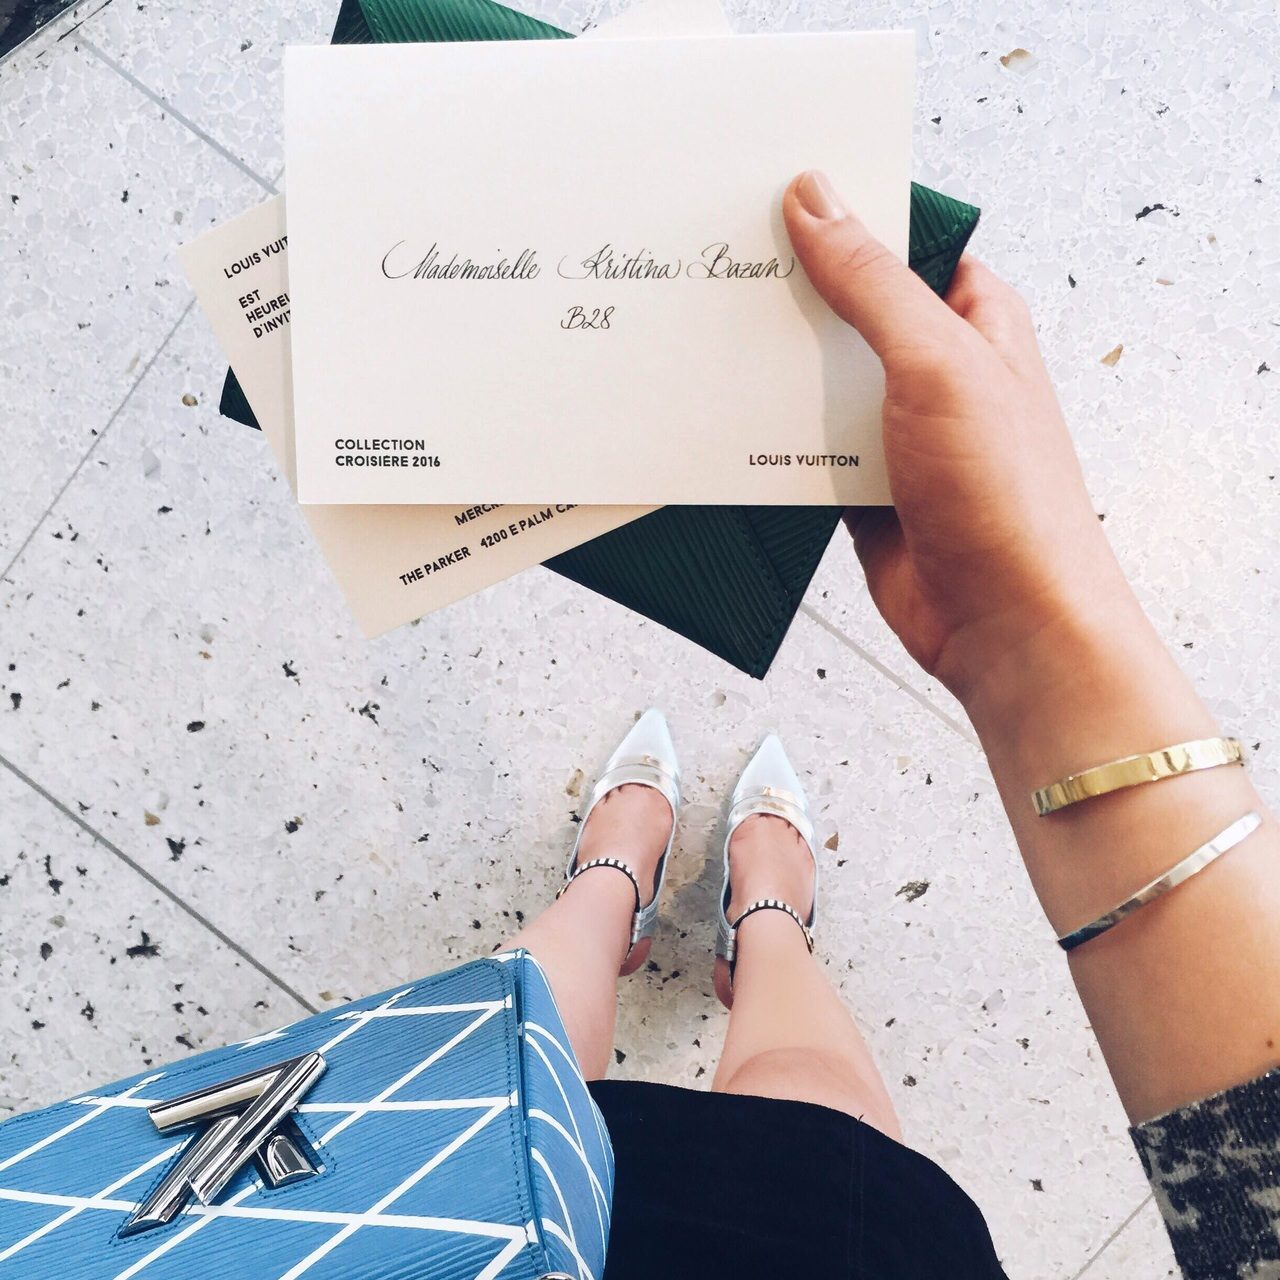 كريستينا بازان تحمل بطاقة دعوتها إلى لويس فويتون كروز 2016